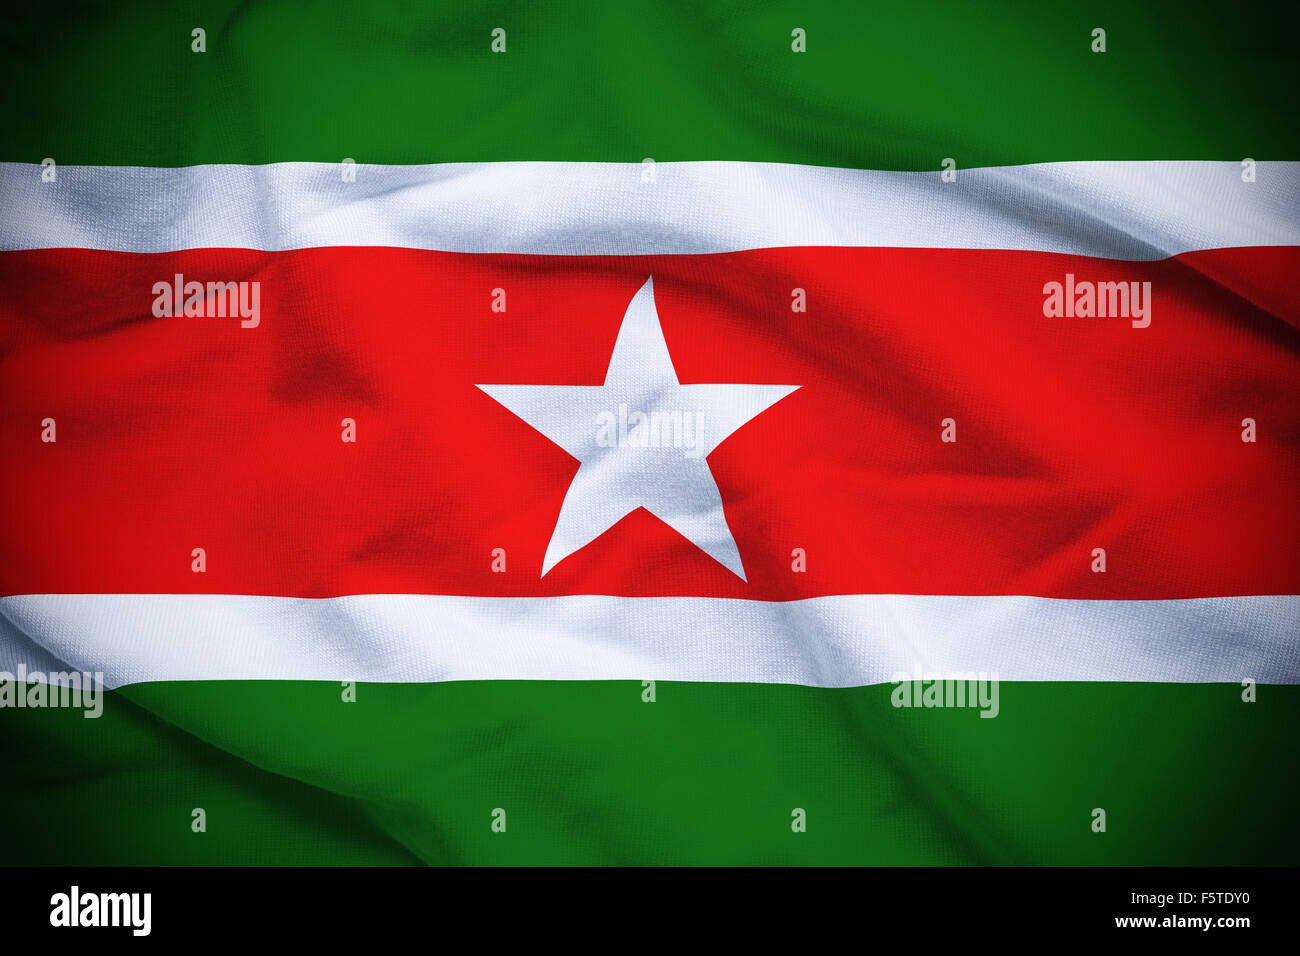 Ondulado y rizado bandera nacional de Suriname de fondo. Foto de stock